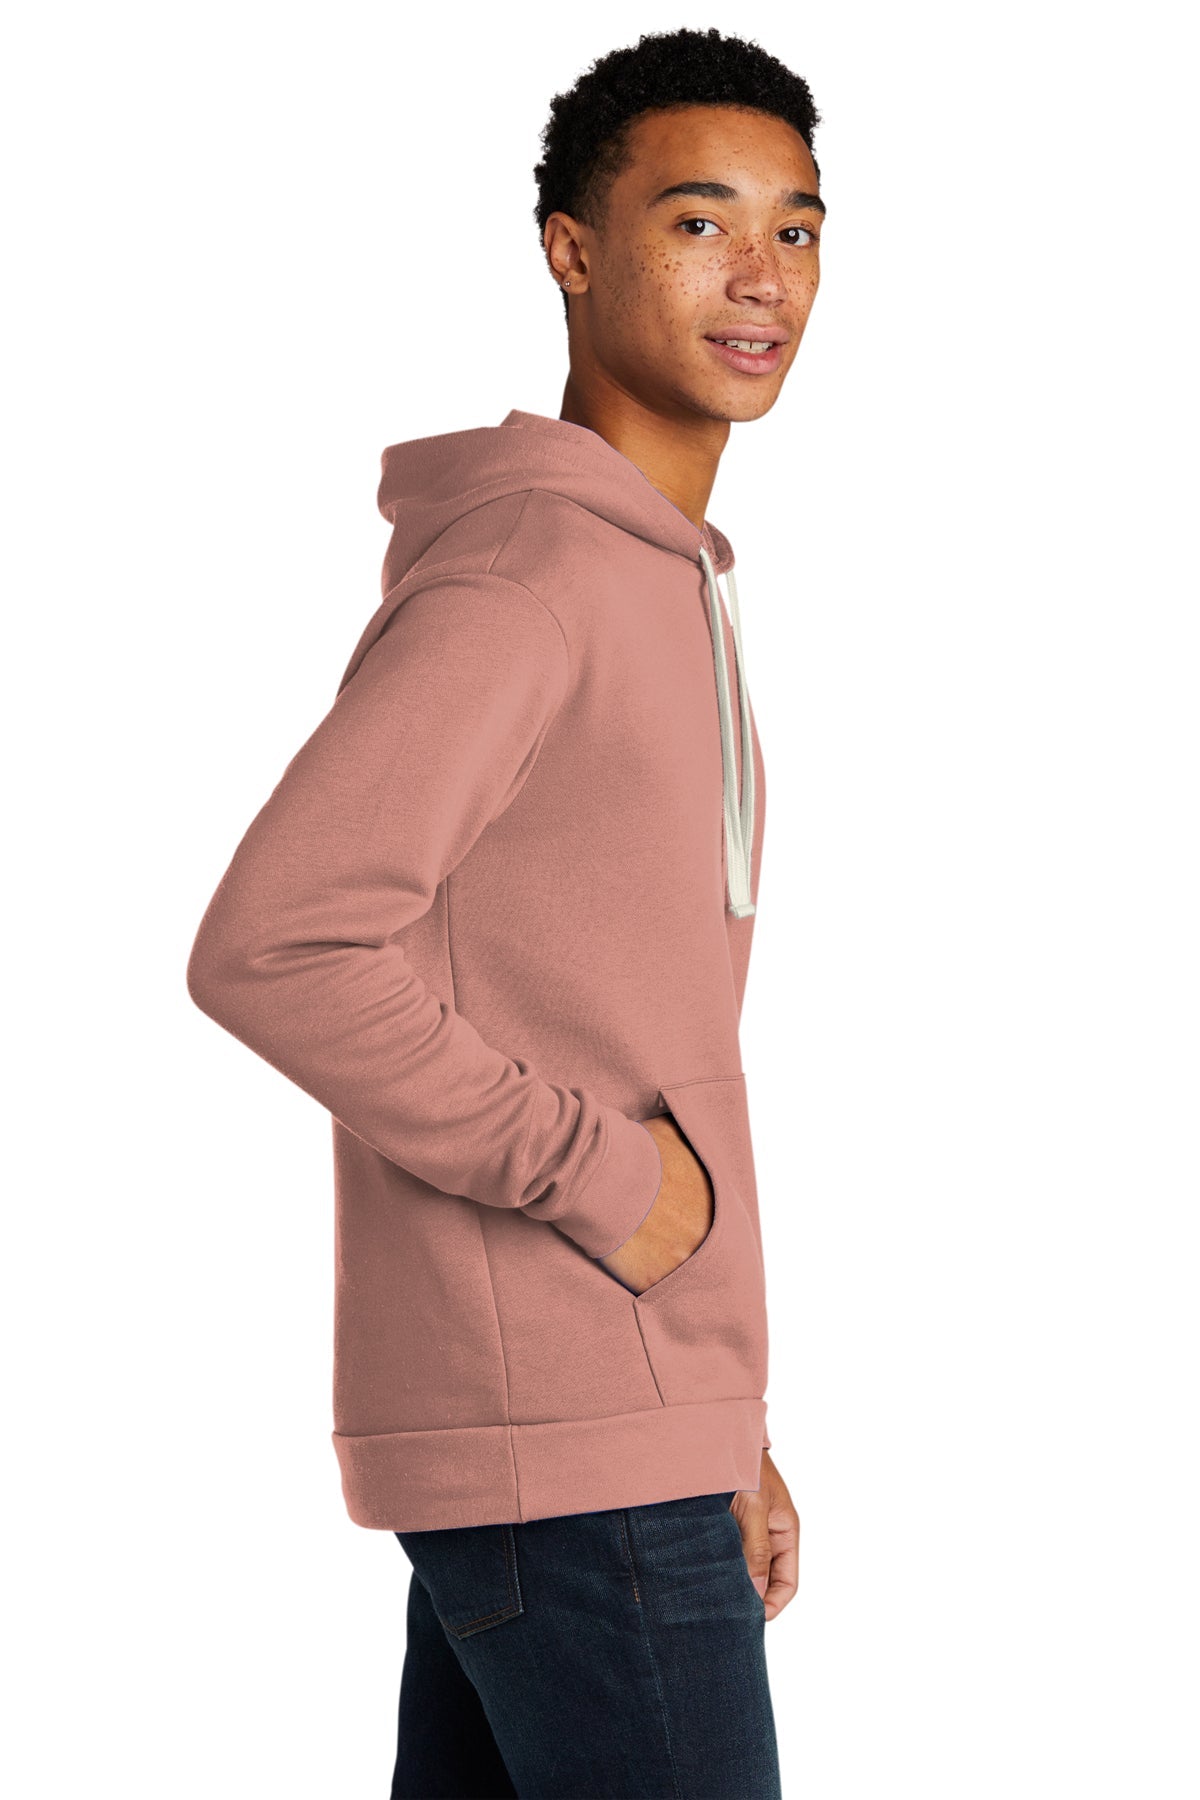 Next Level Unisex Beach Fleece Customized Hoodies, Desert Pink